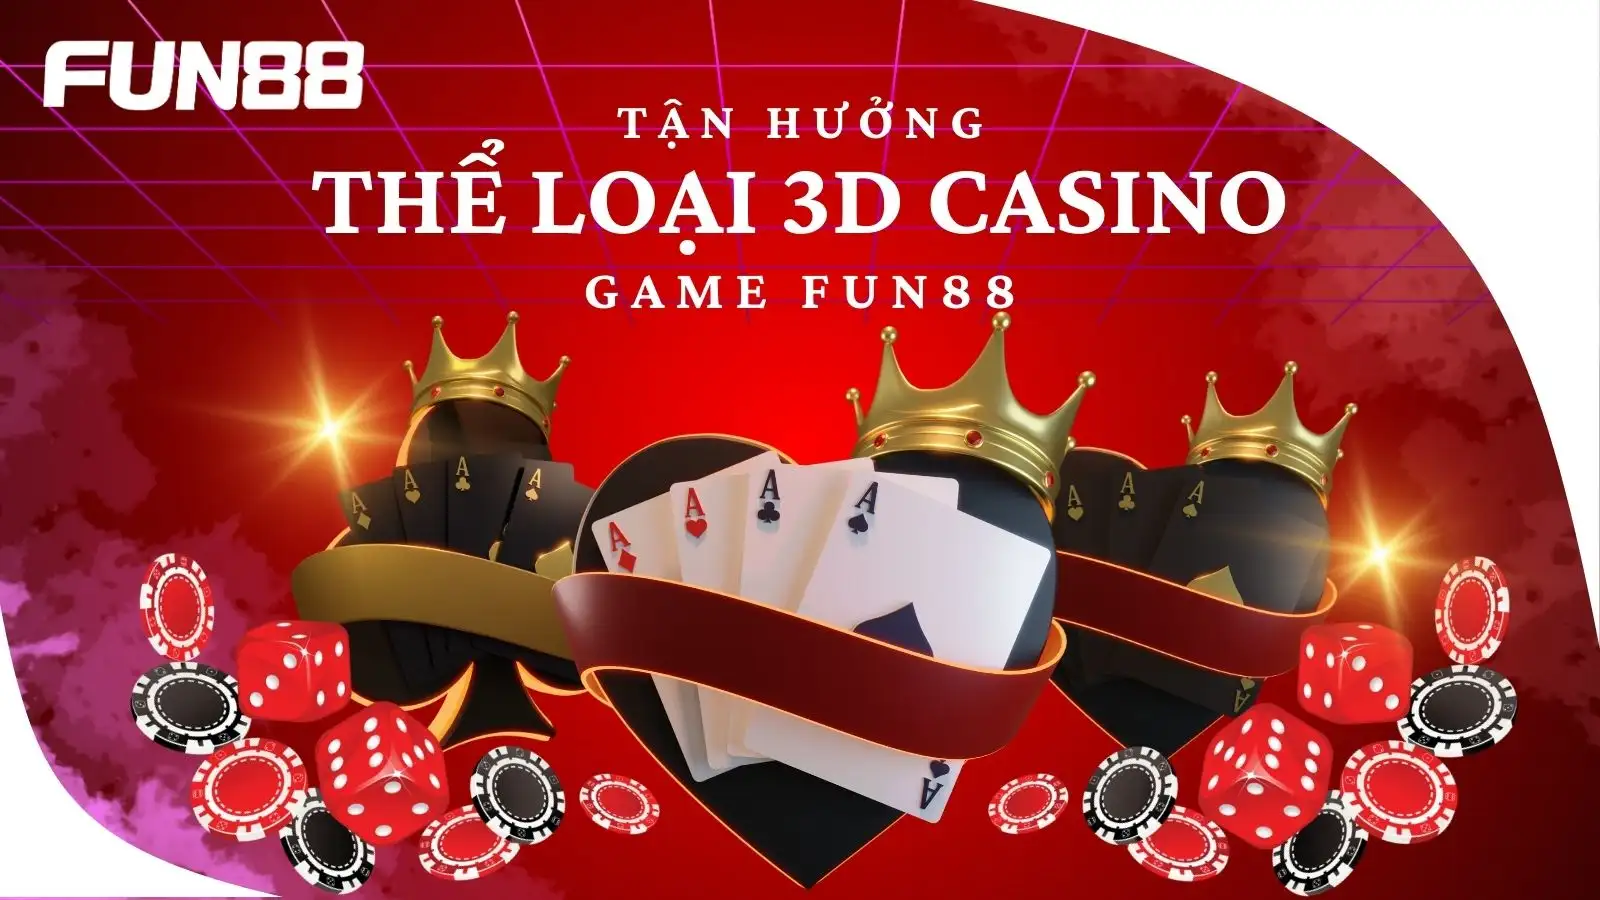 3d casino fun88